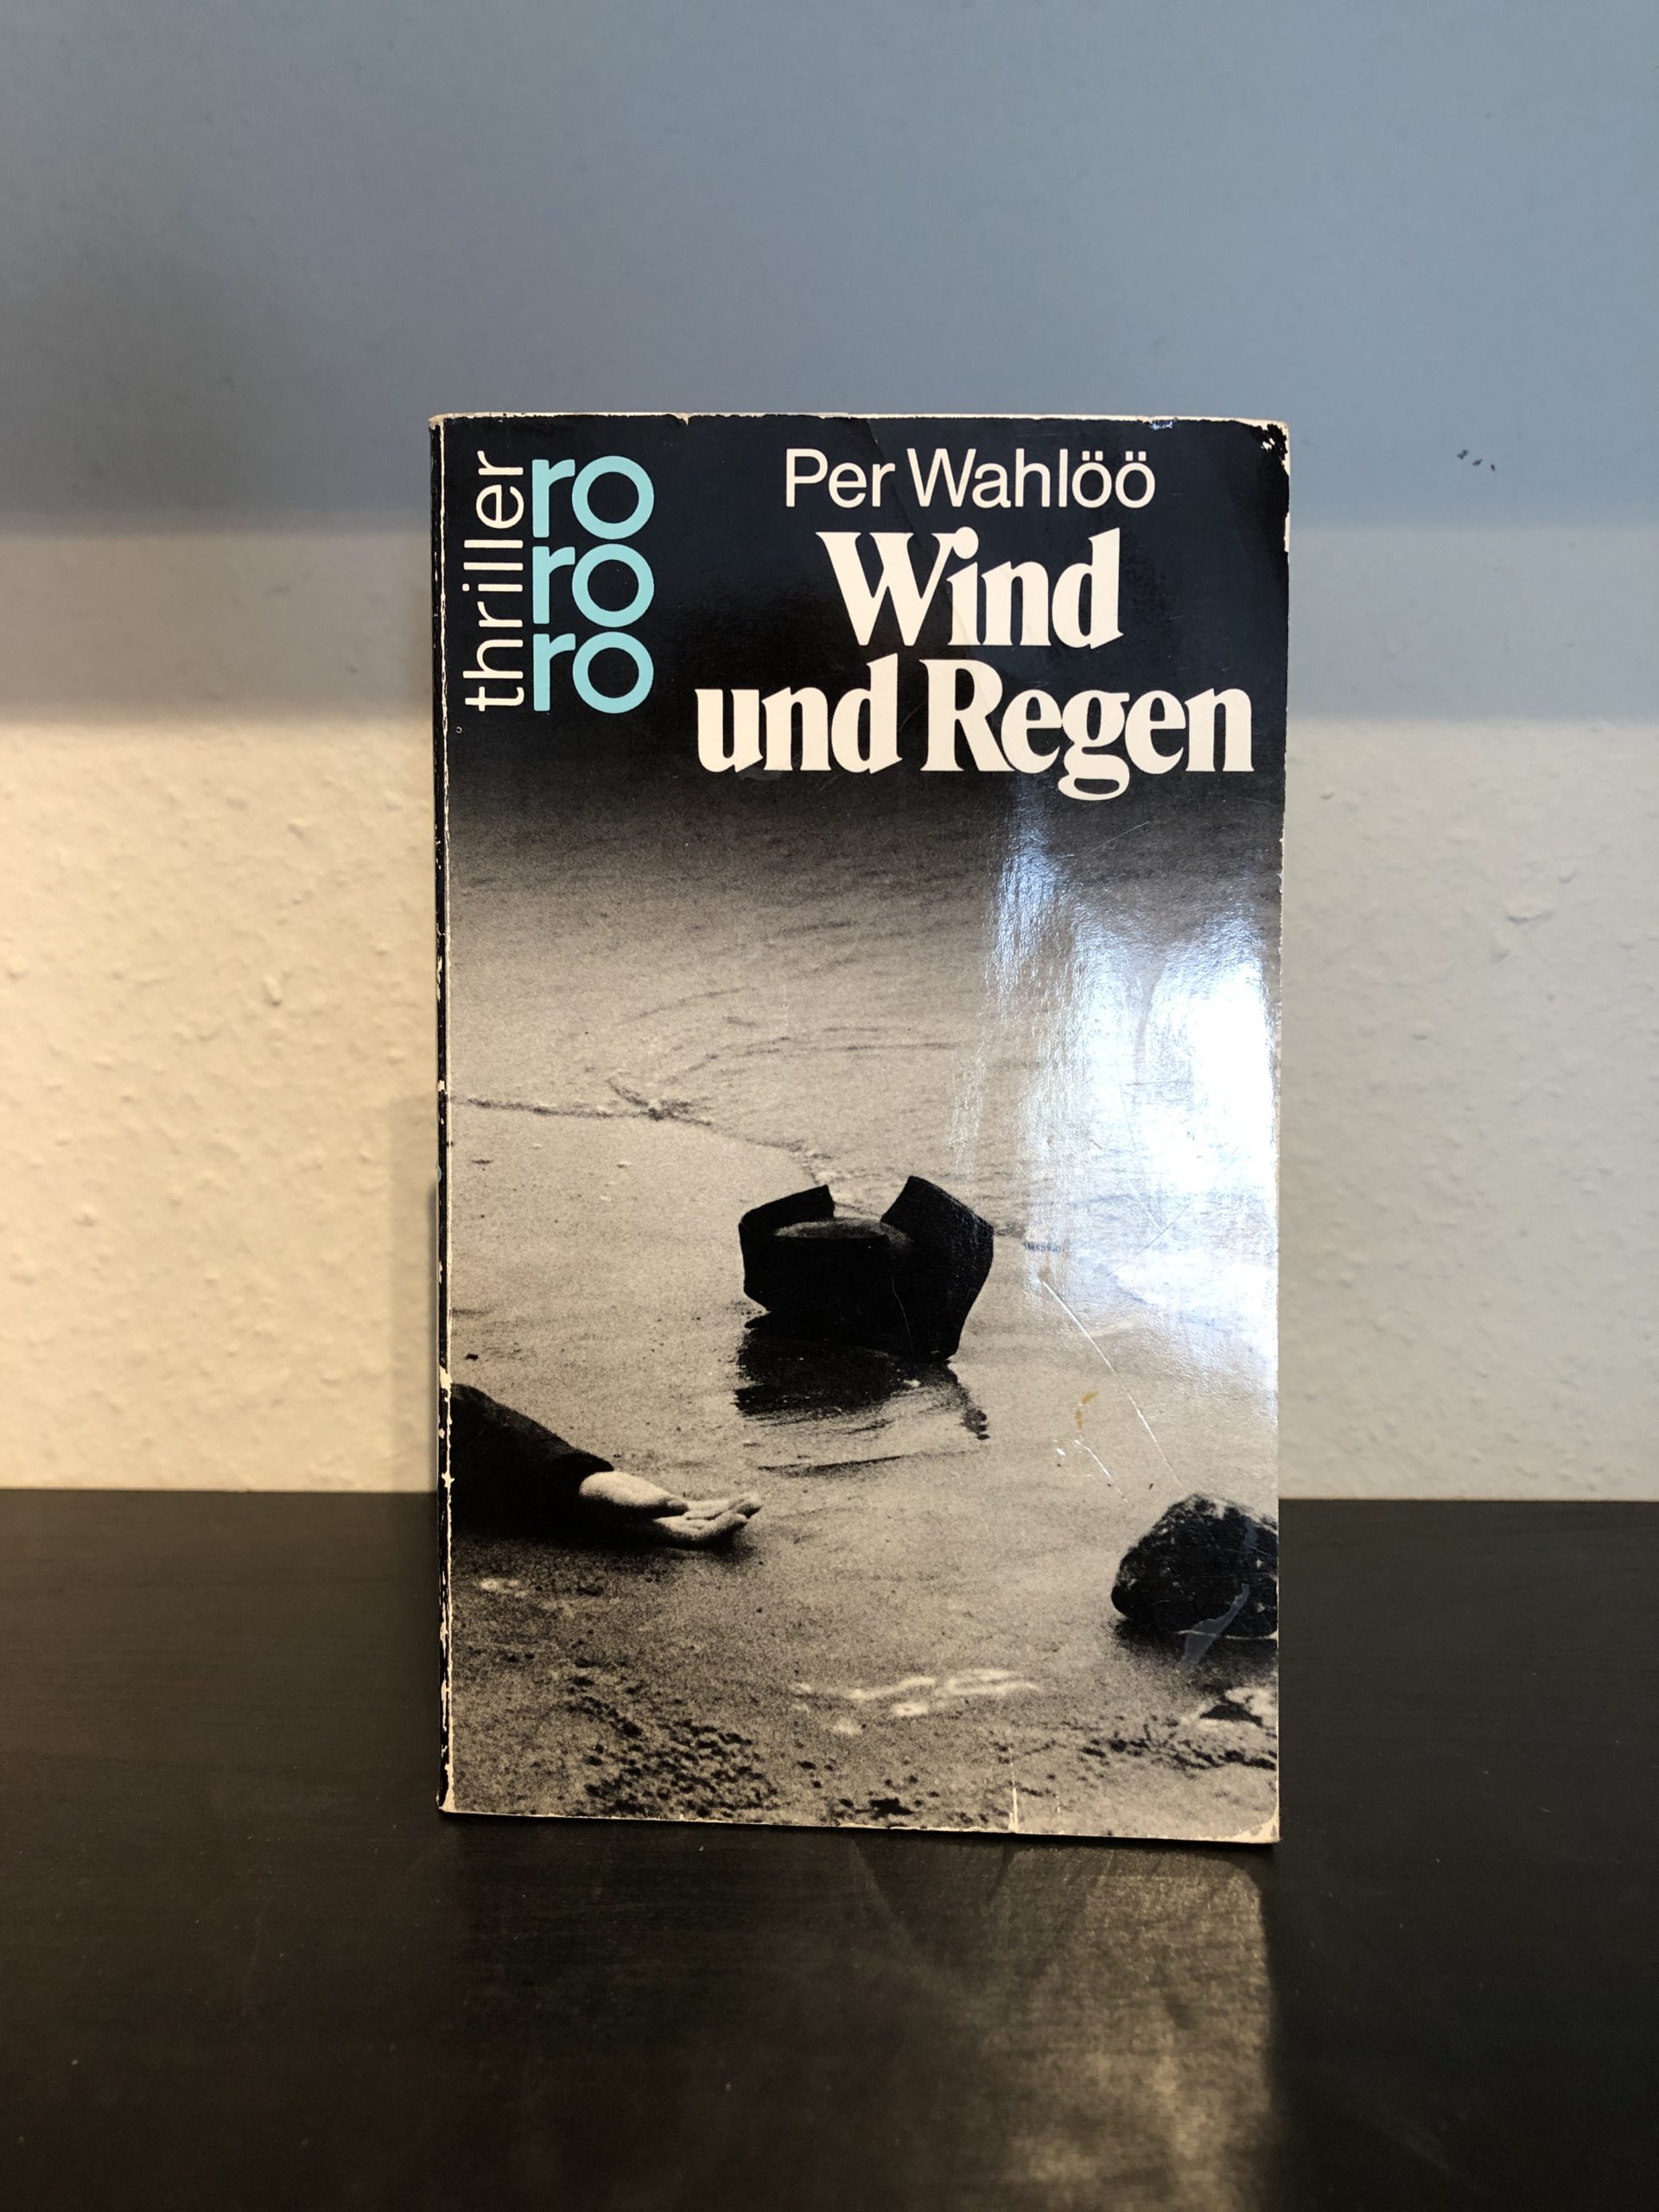 Wind und Regen - Per Wahlöö main image